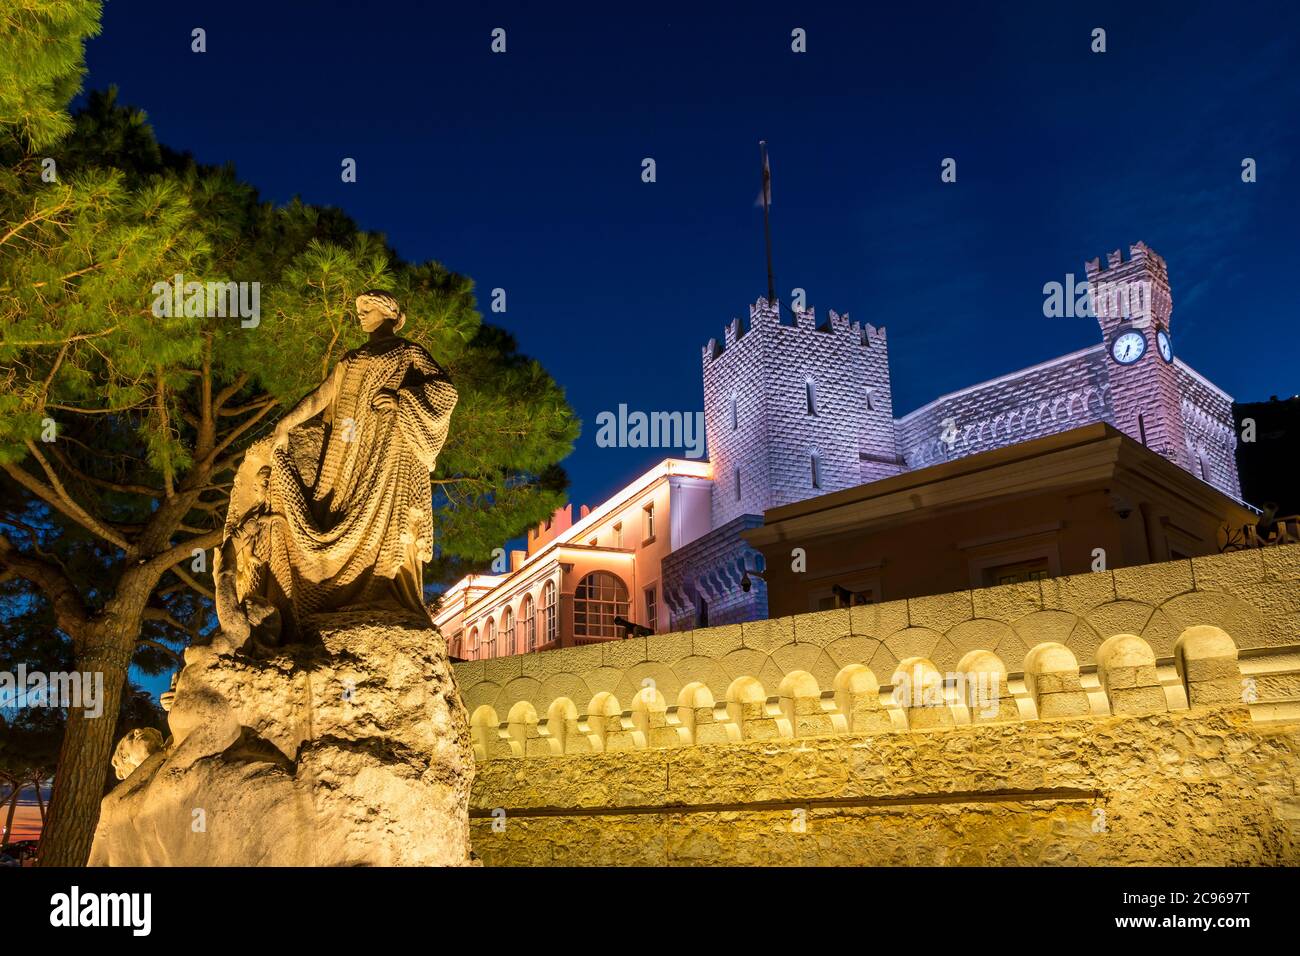 Illuminated Prince's Palace at dusk, Monaco, Cote d'Azur, Europe Stock Photo